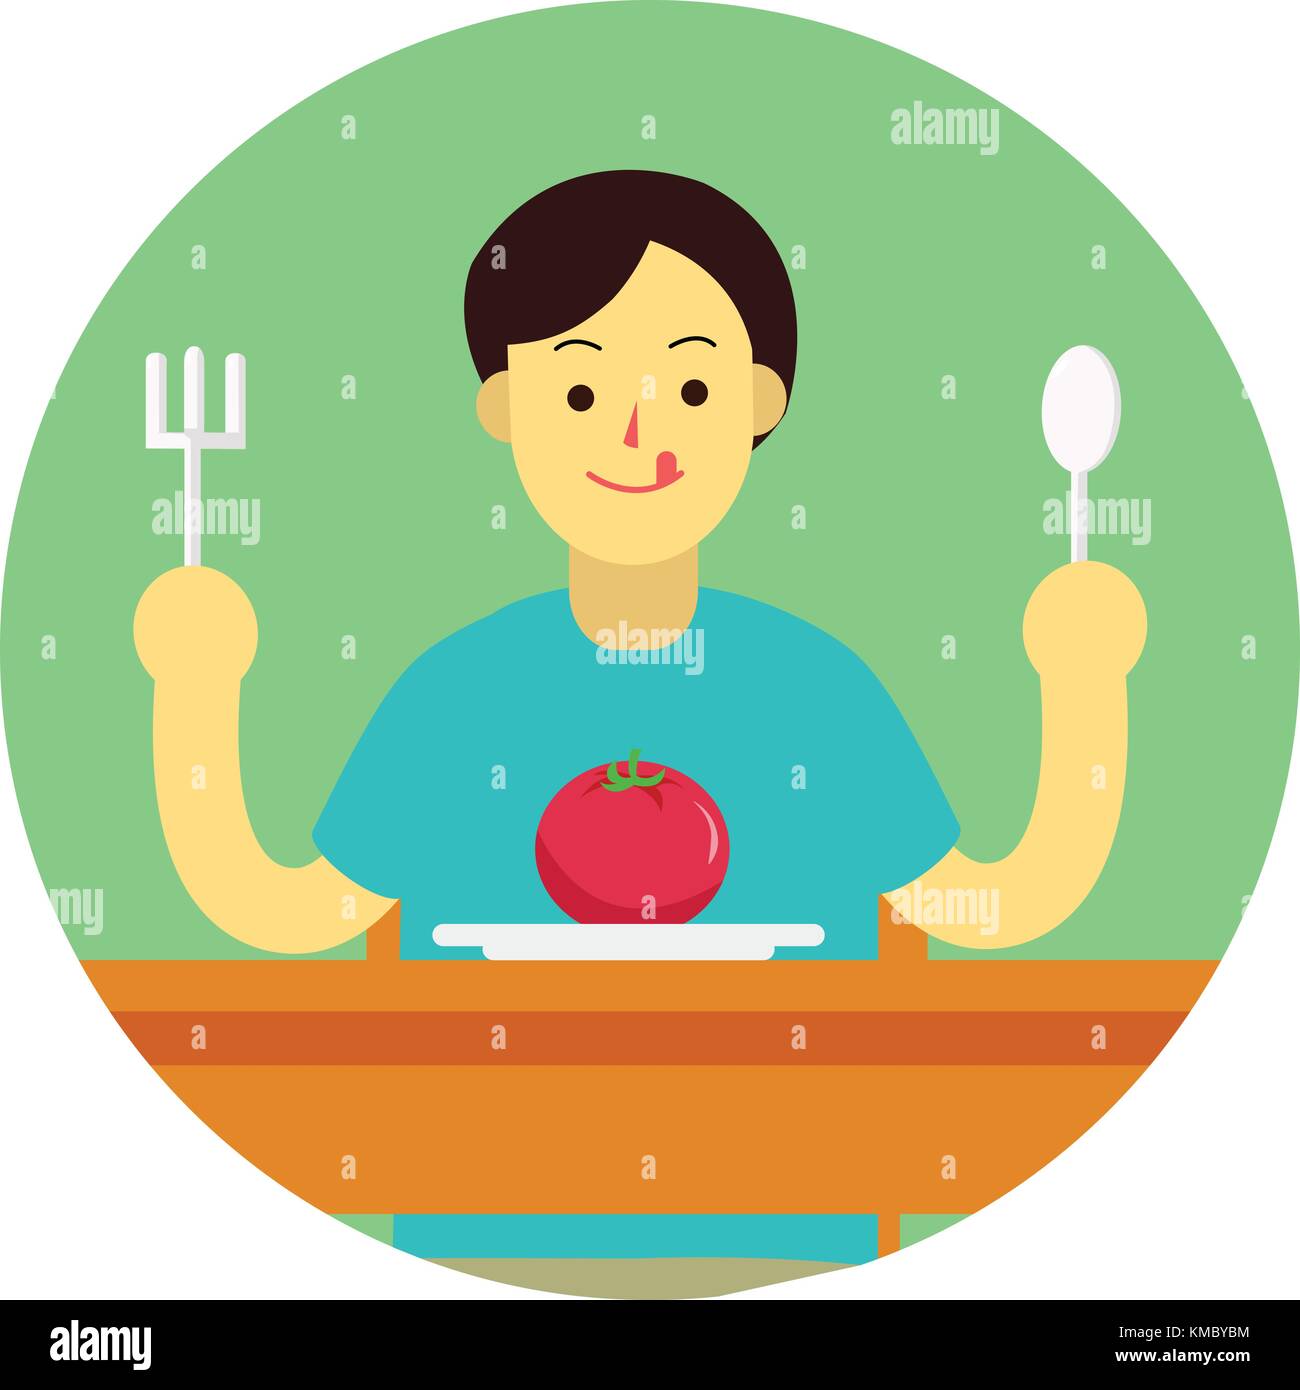 Junger Mann bereiten Tomaten mit Löffel und Gabel am Tisch zu essen. flachbild Mann cartoon Design im grünen Kreis Vector Illustration Stock Vektor